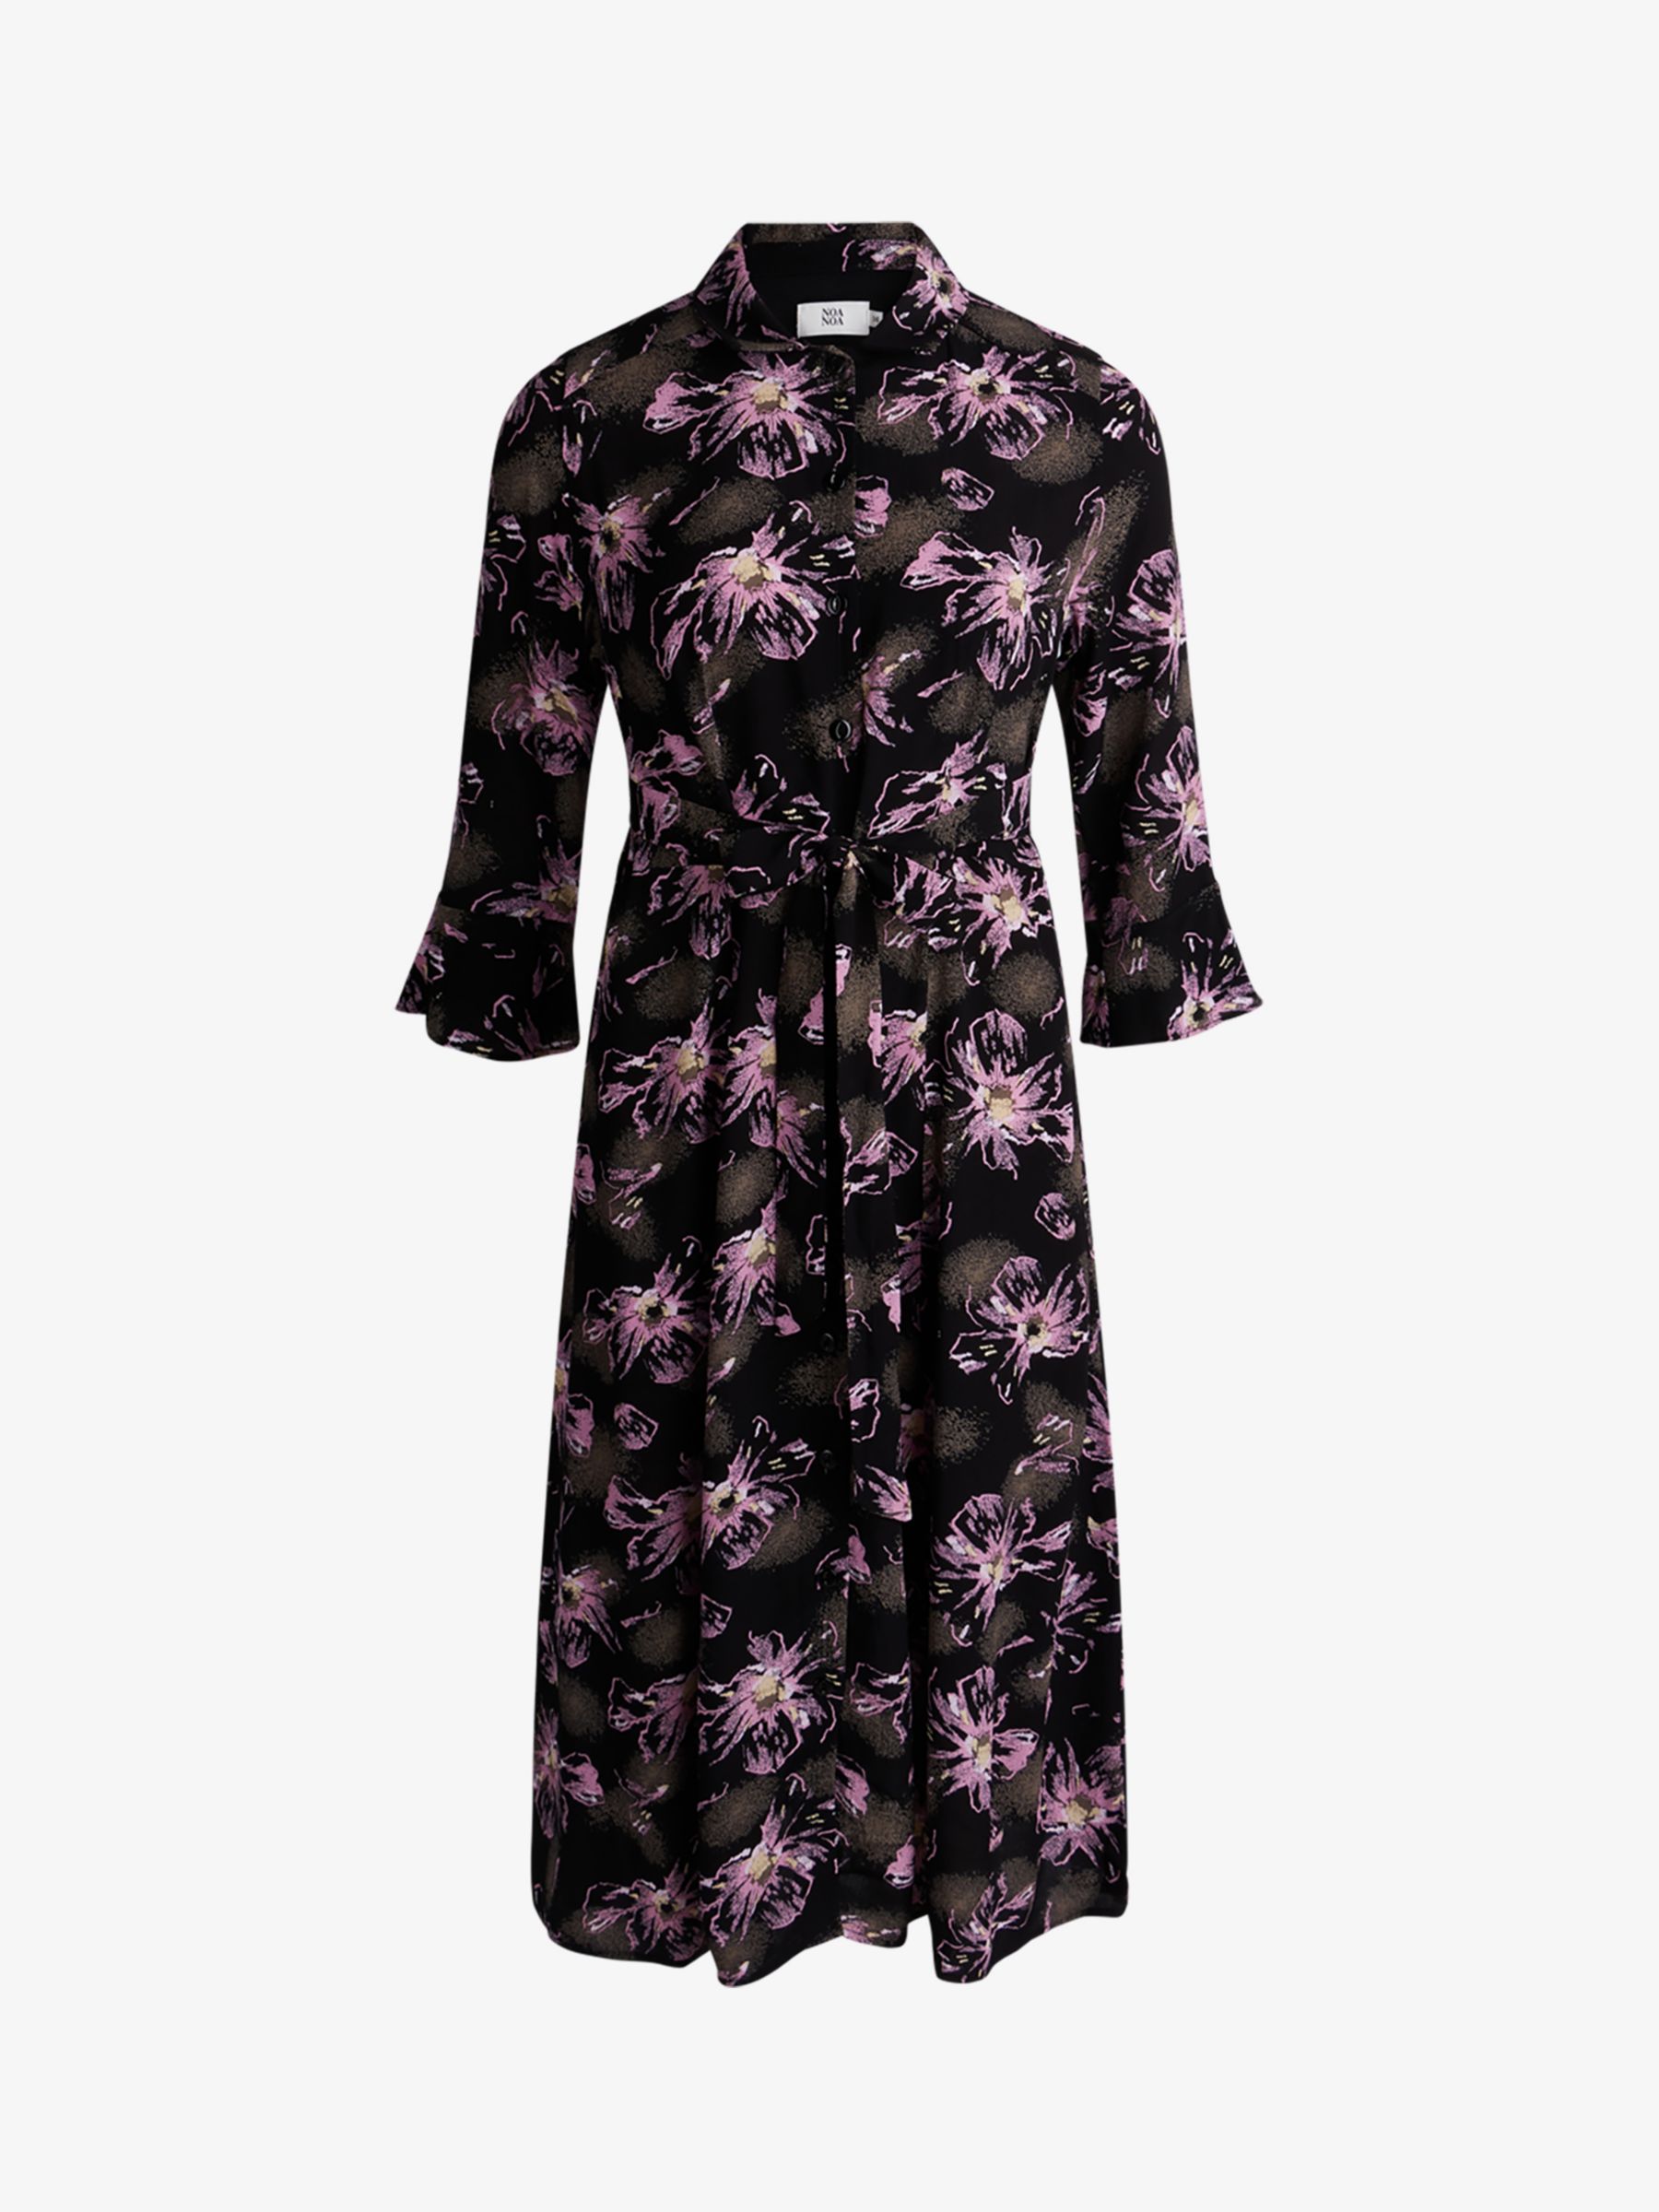 Noa Noa Liva Floral Midi Shirt Dress, Black/Purple at John Lewis & Partners